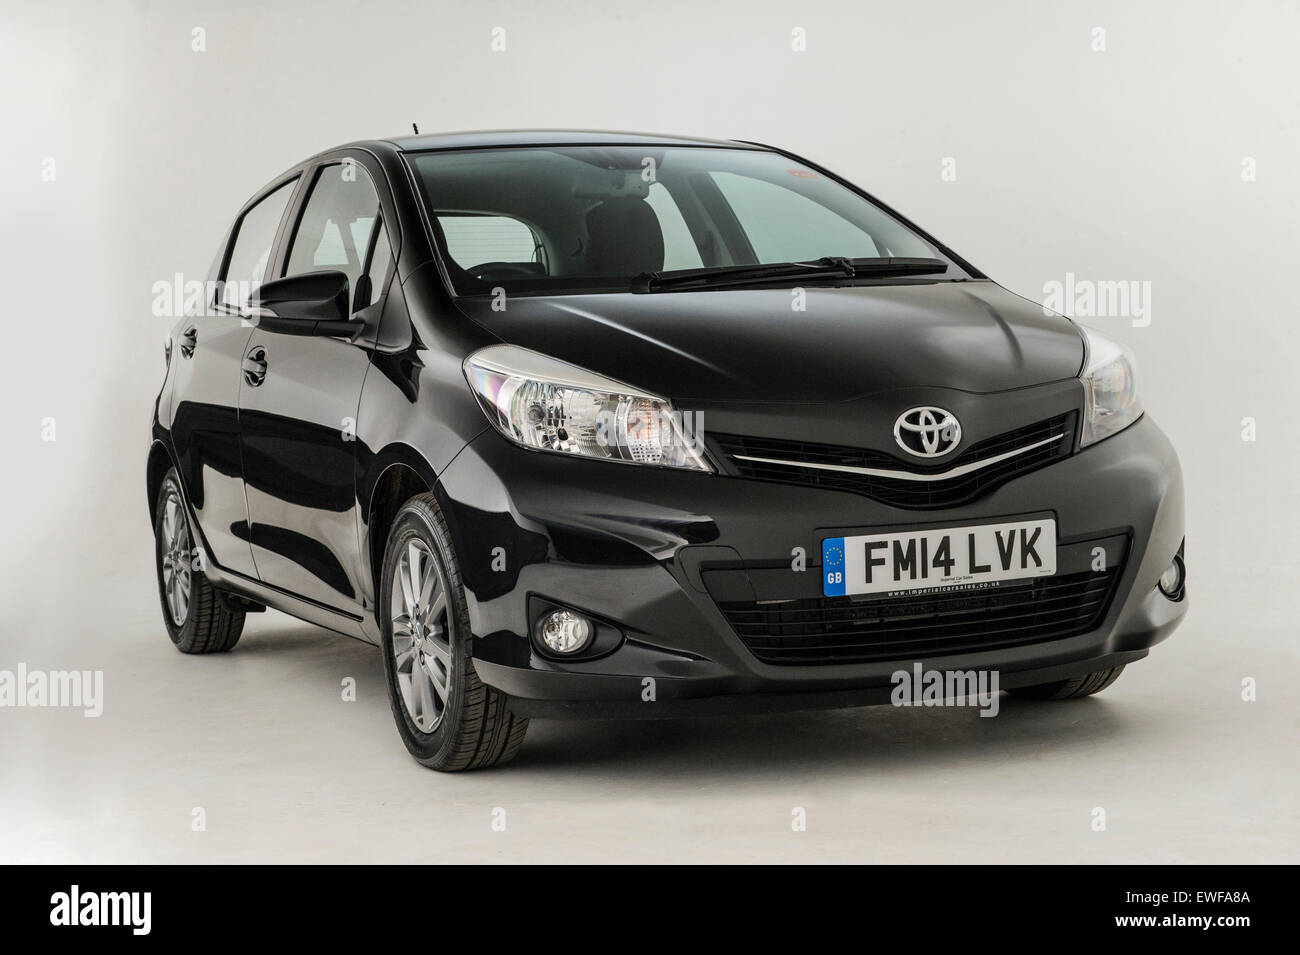 2014 Toyota Yaris Stock Photo